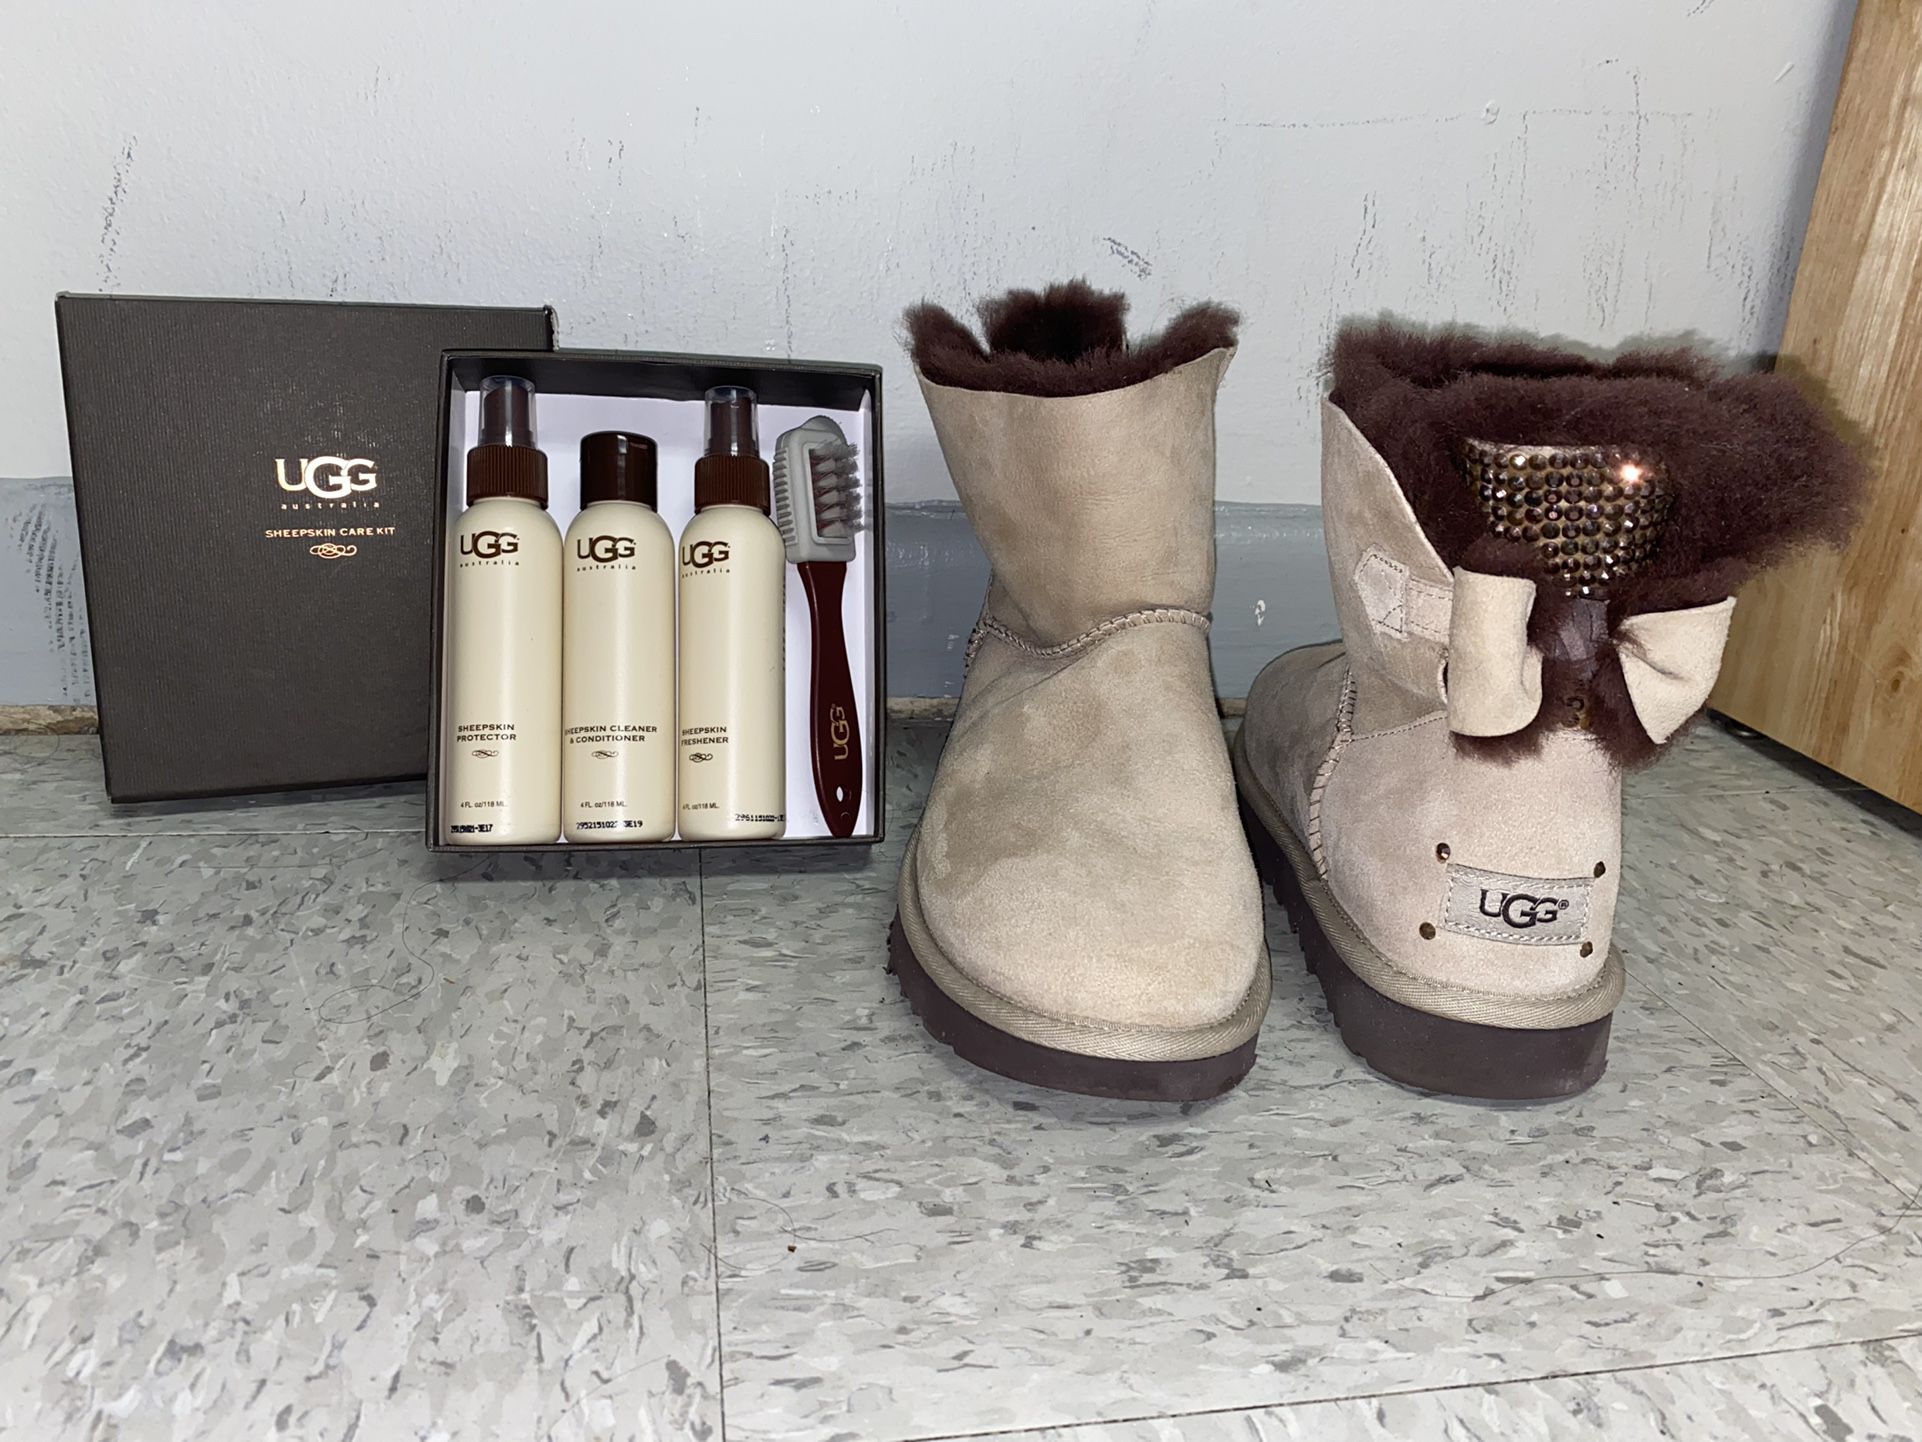 UGG Boots & Sheepskin Care Kit